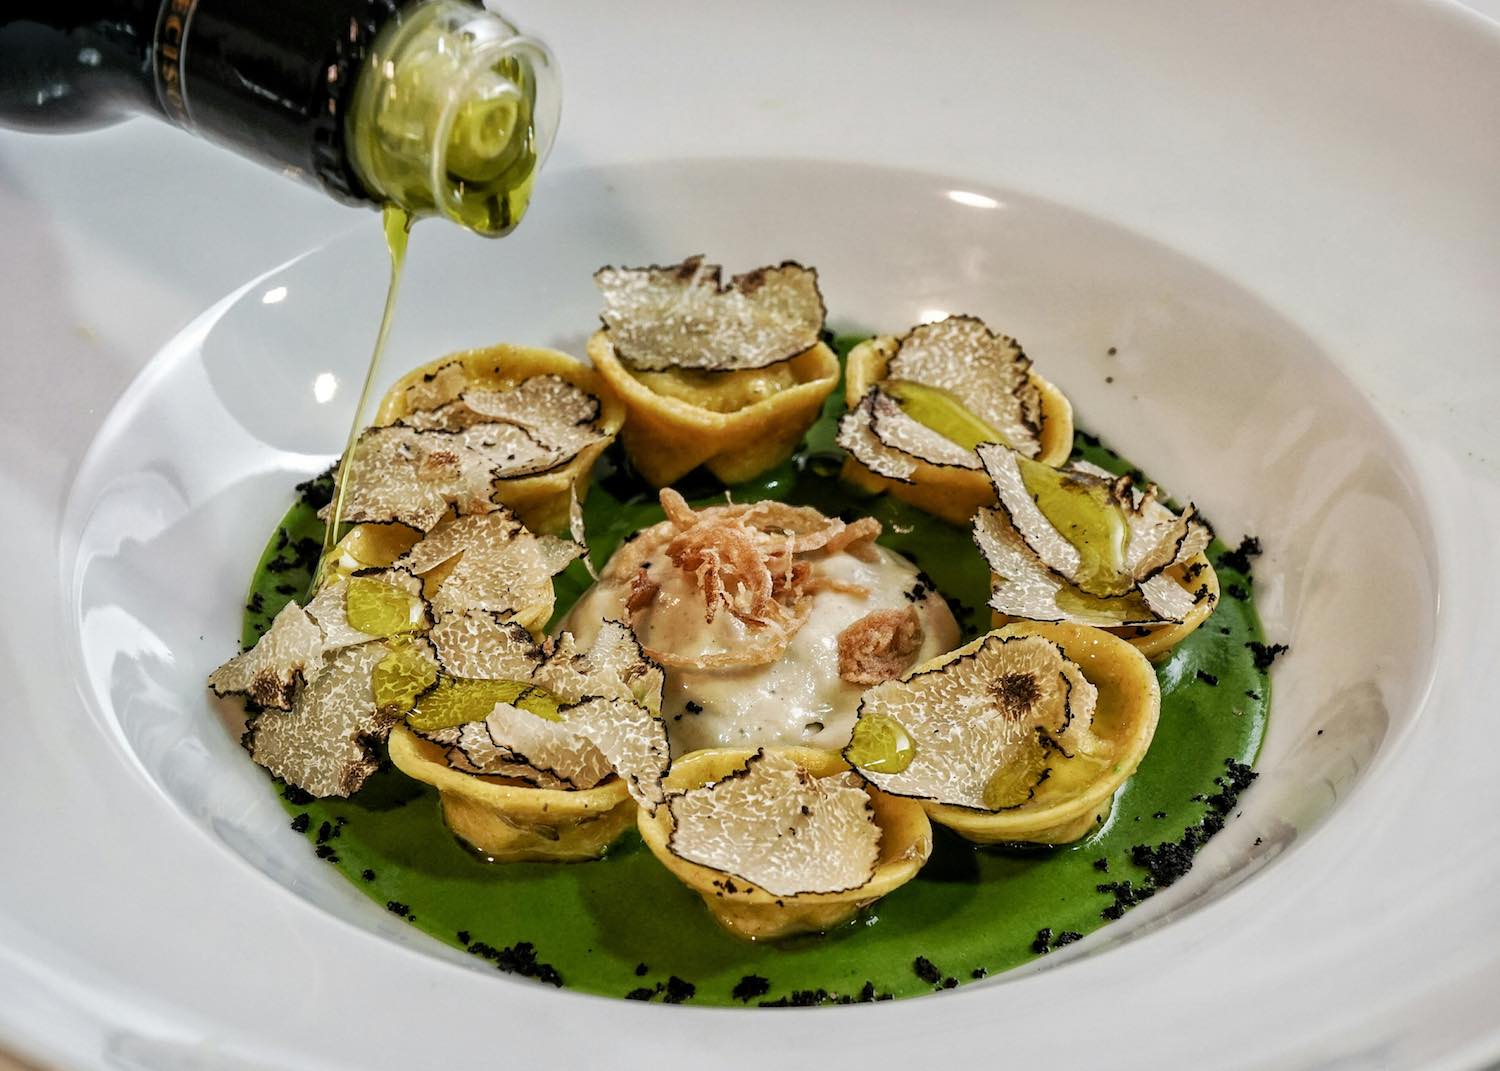 Andrea Perini, giovane chef fiorentino del ristorante Al588, Resort Borgo I Vicelli, è stato eletto Ristoratore dell'Anno dalla guida "Flos Olei" per l'anno 2019.